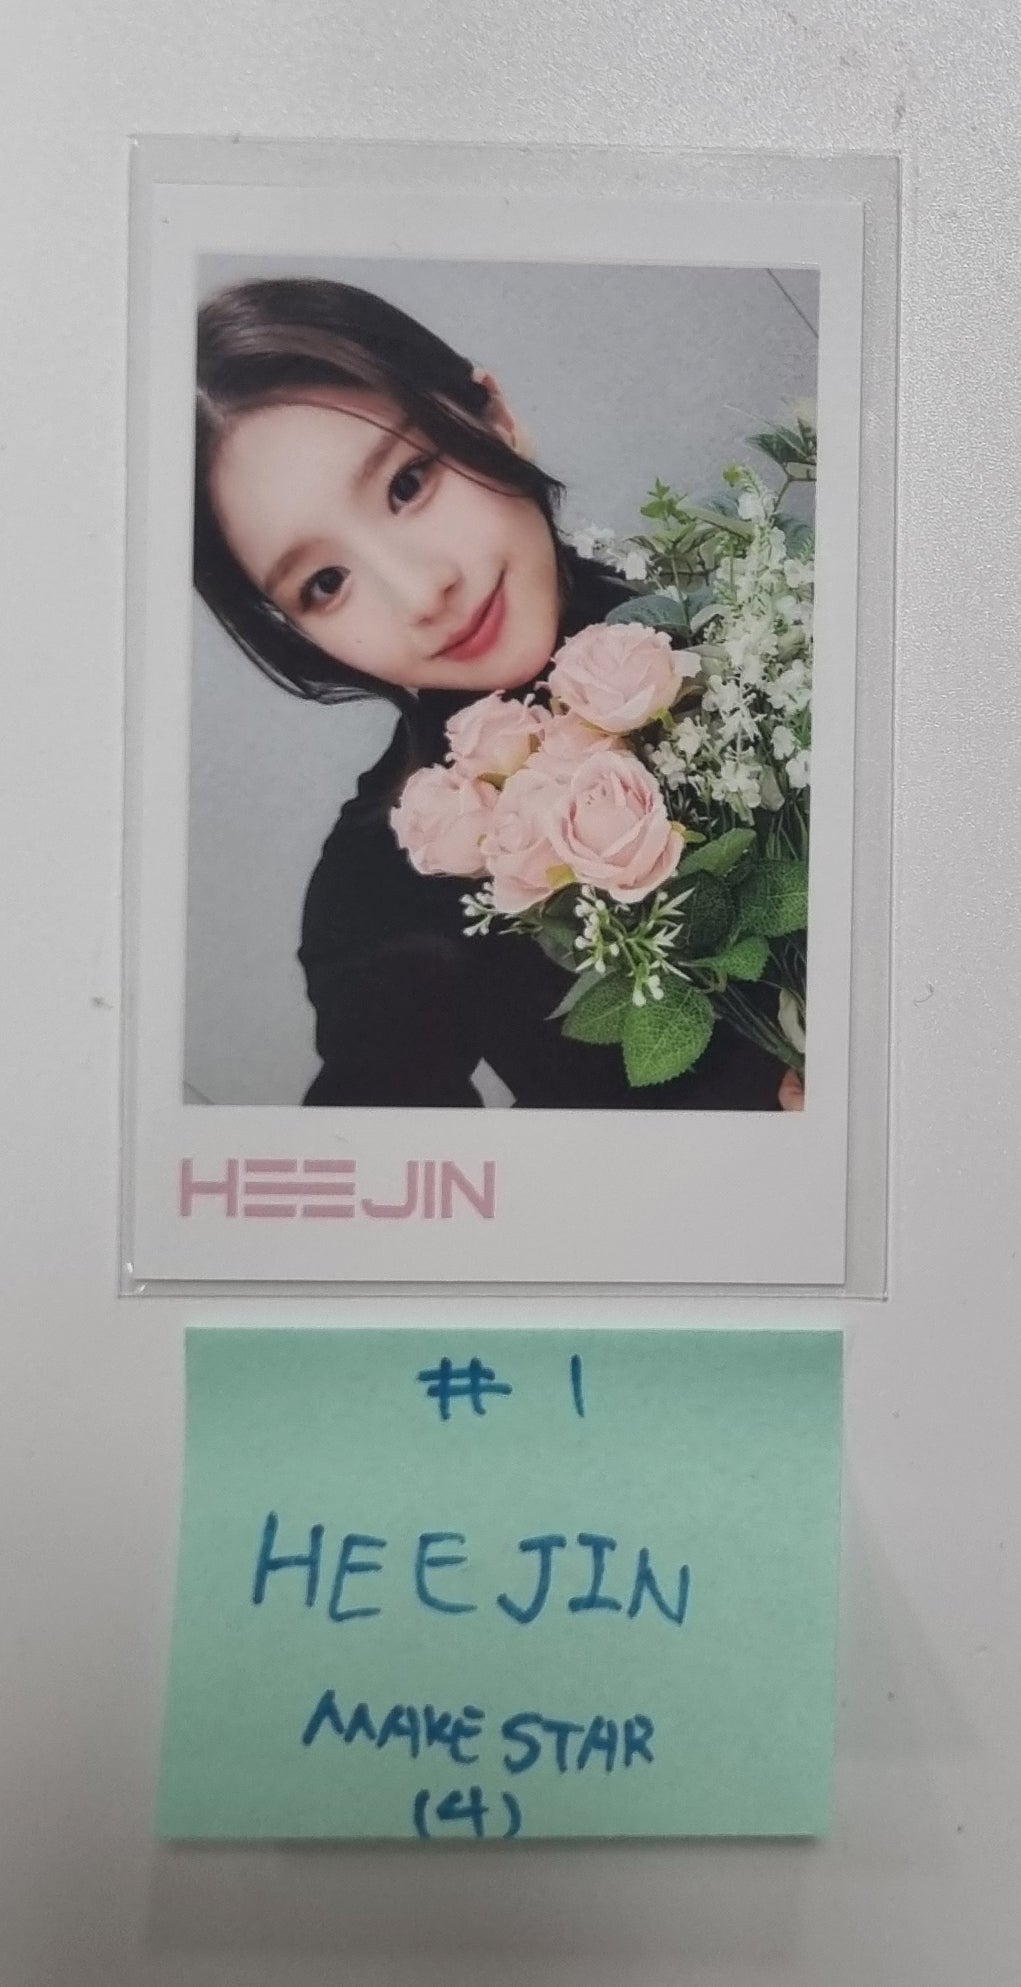 HeeJin "K" アルバム OBJEKT A01 - Makestar 予約特典 ポラロイド型フォトカード [23.11.03]